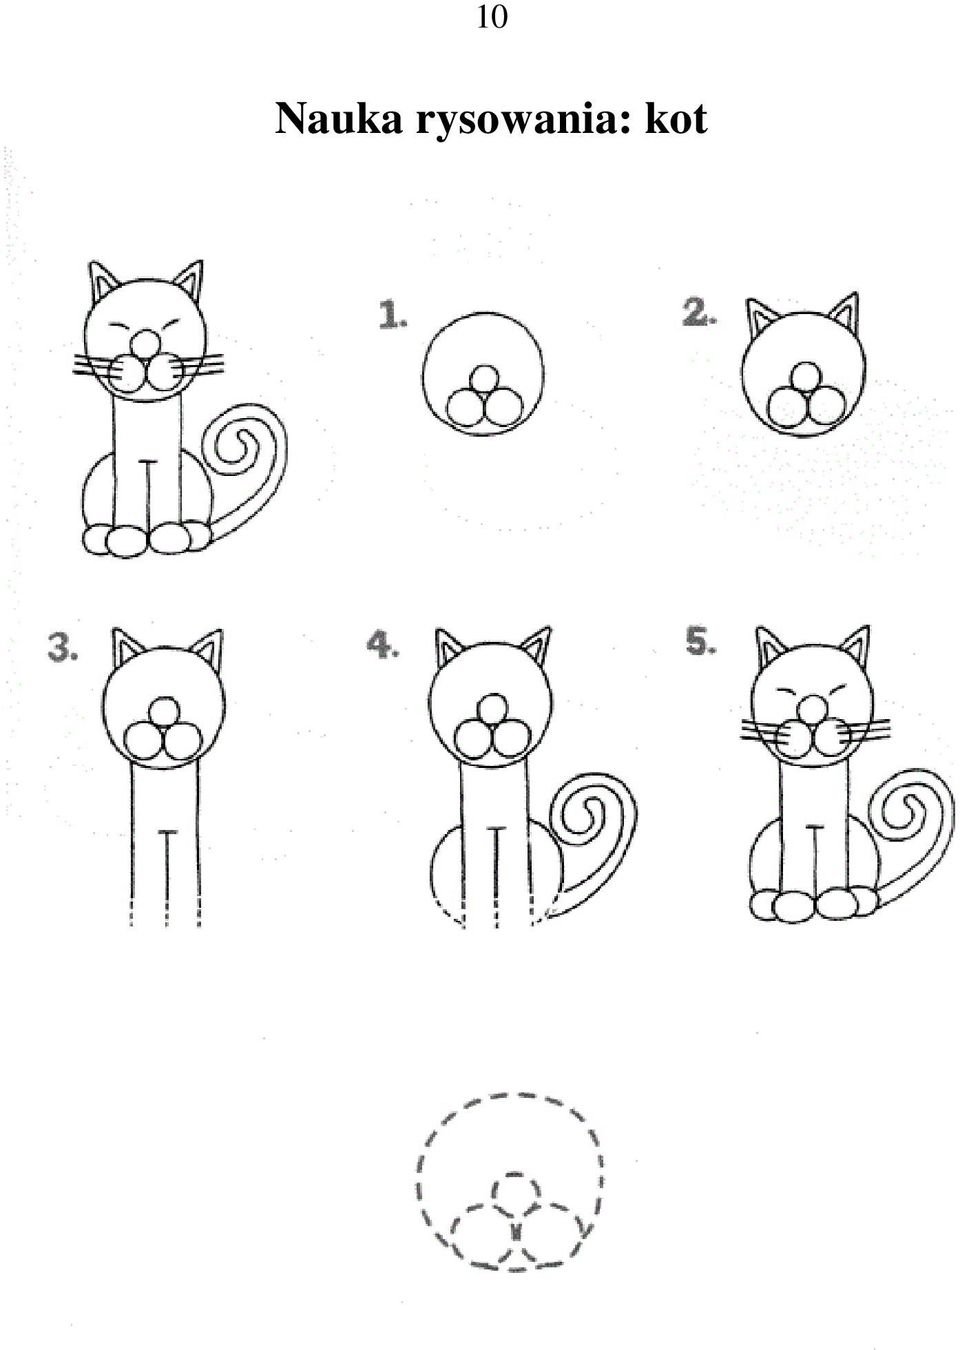 Поэтапное рисование кошки для детей